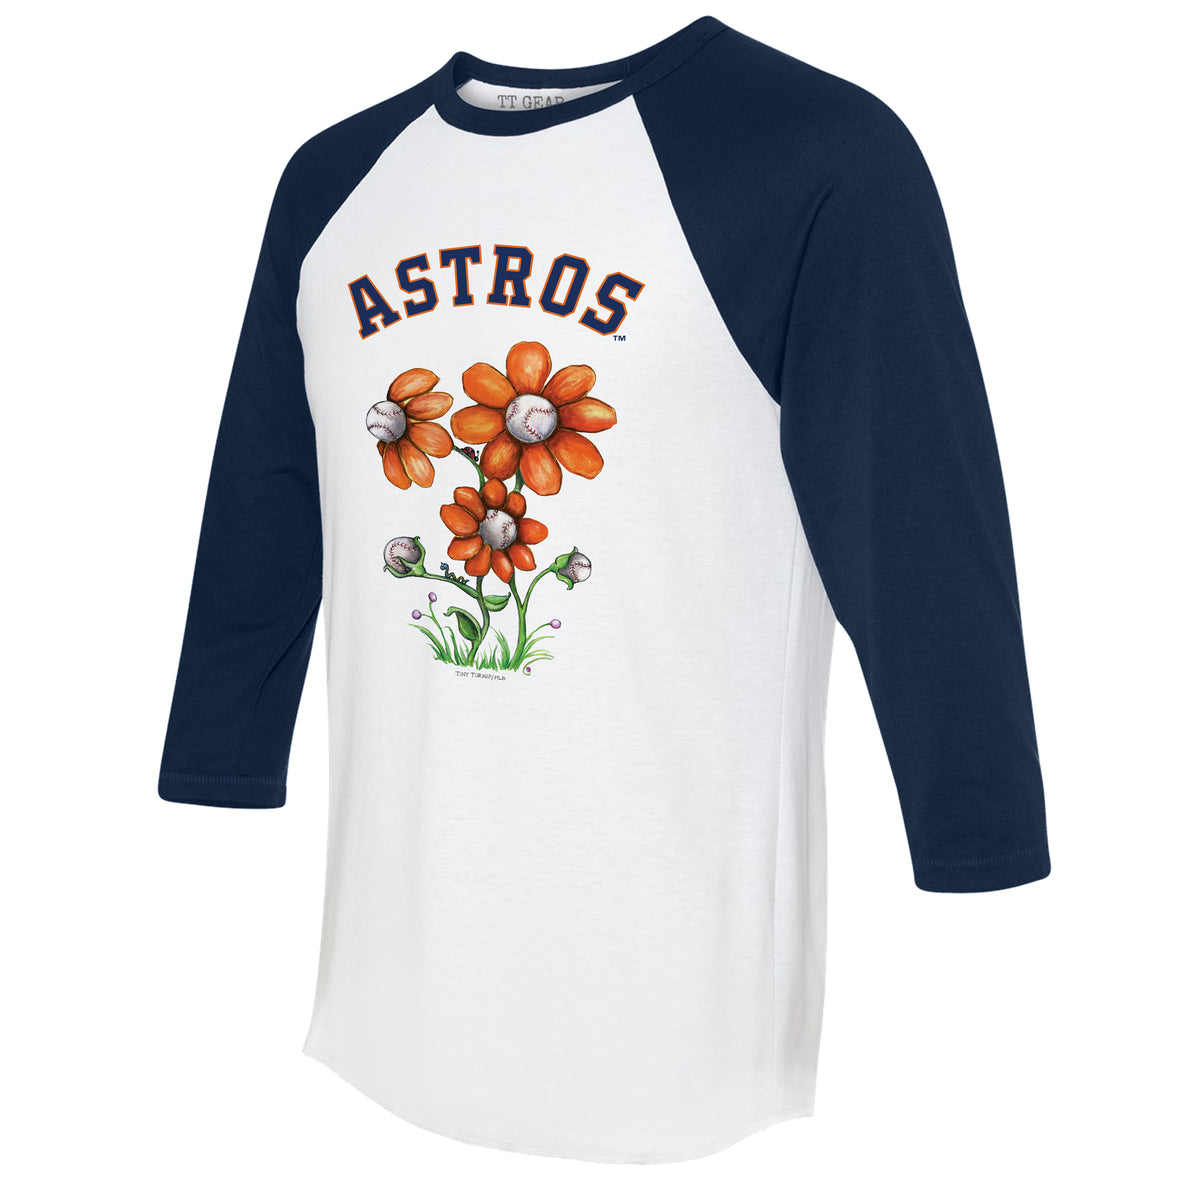 Women's Orange/Navy Houston Astros Raglan V-Neck T-Shirt